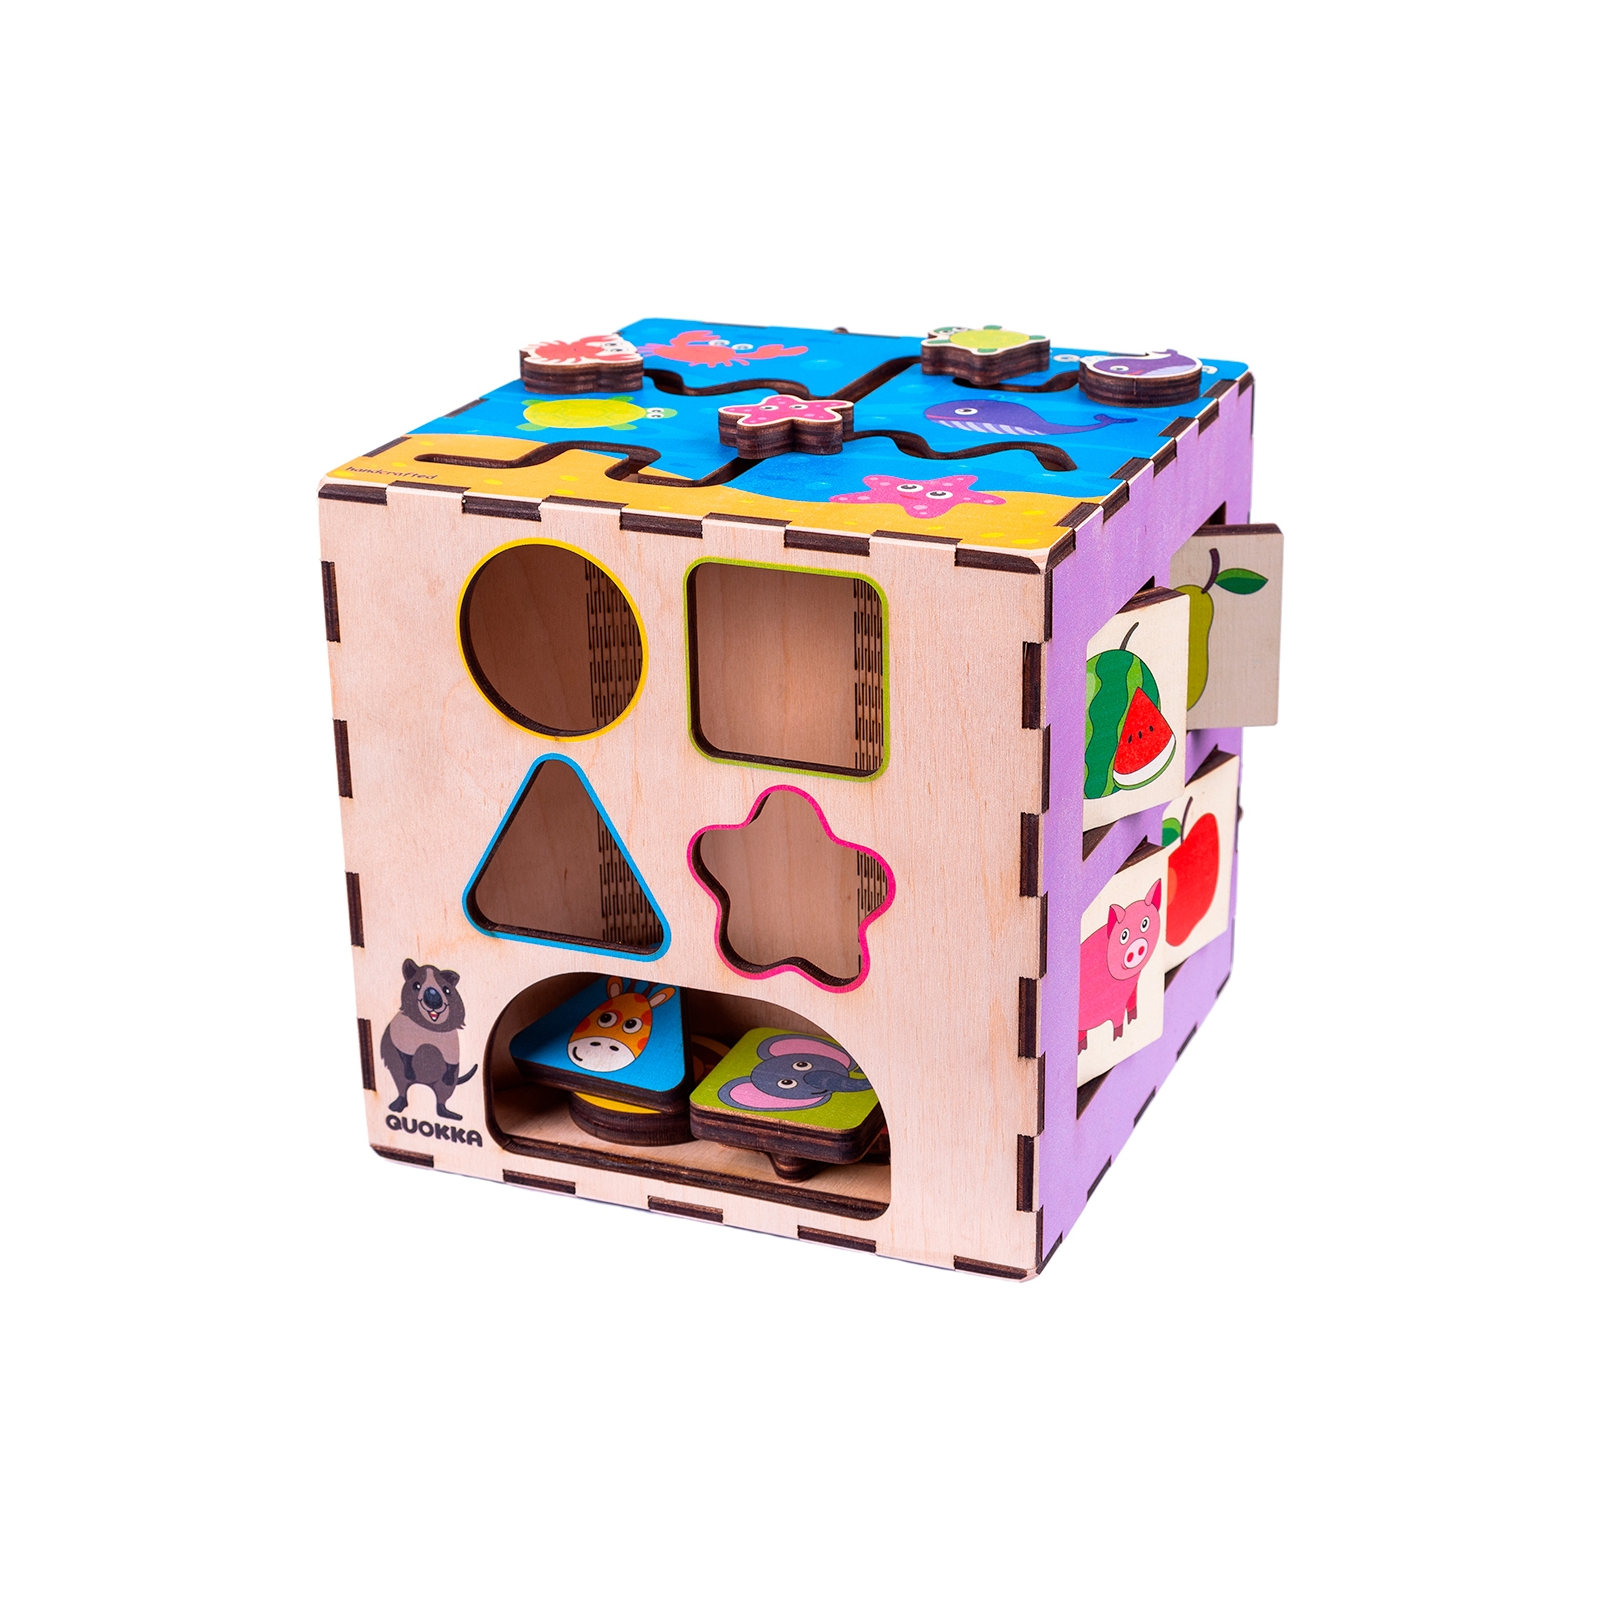 Развивающая игрушка Quokka Интерактивный куб 20х20 см (QUOKA002A)